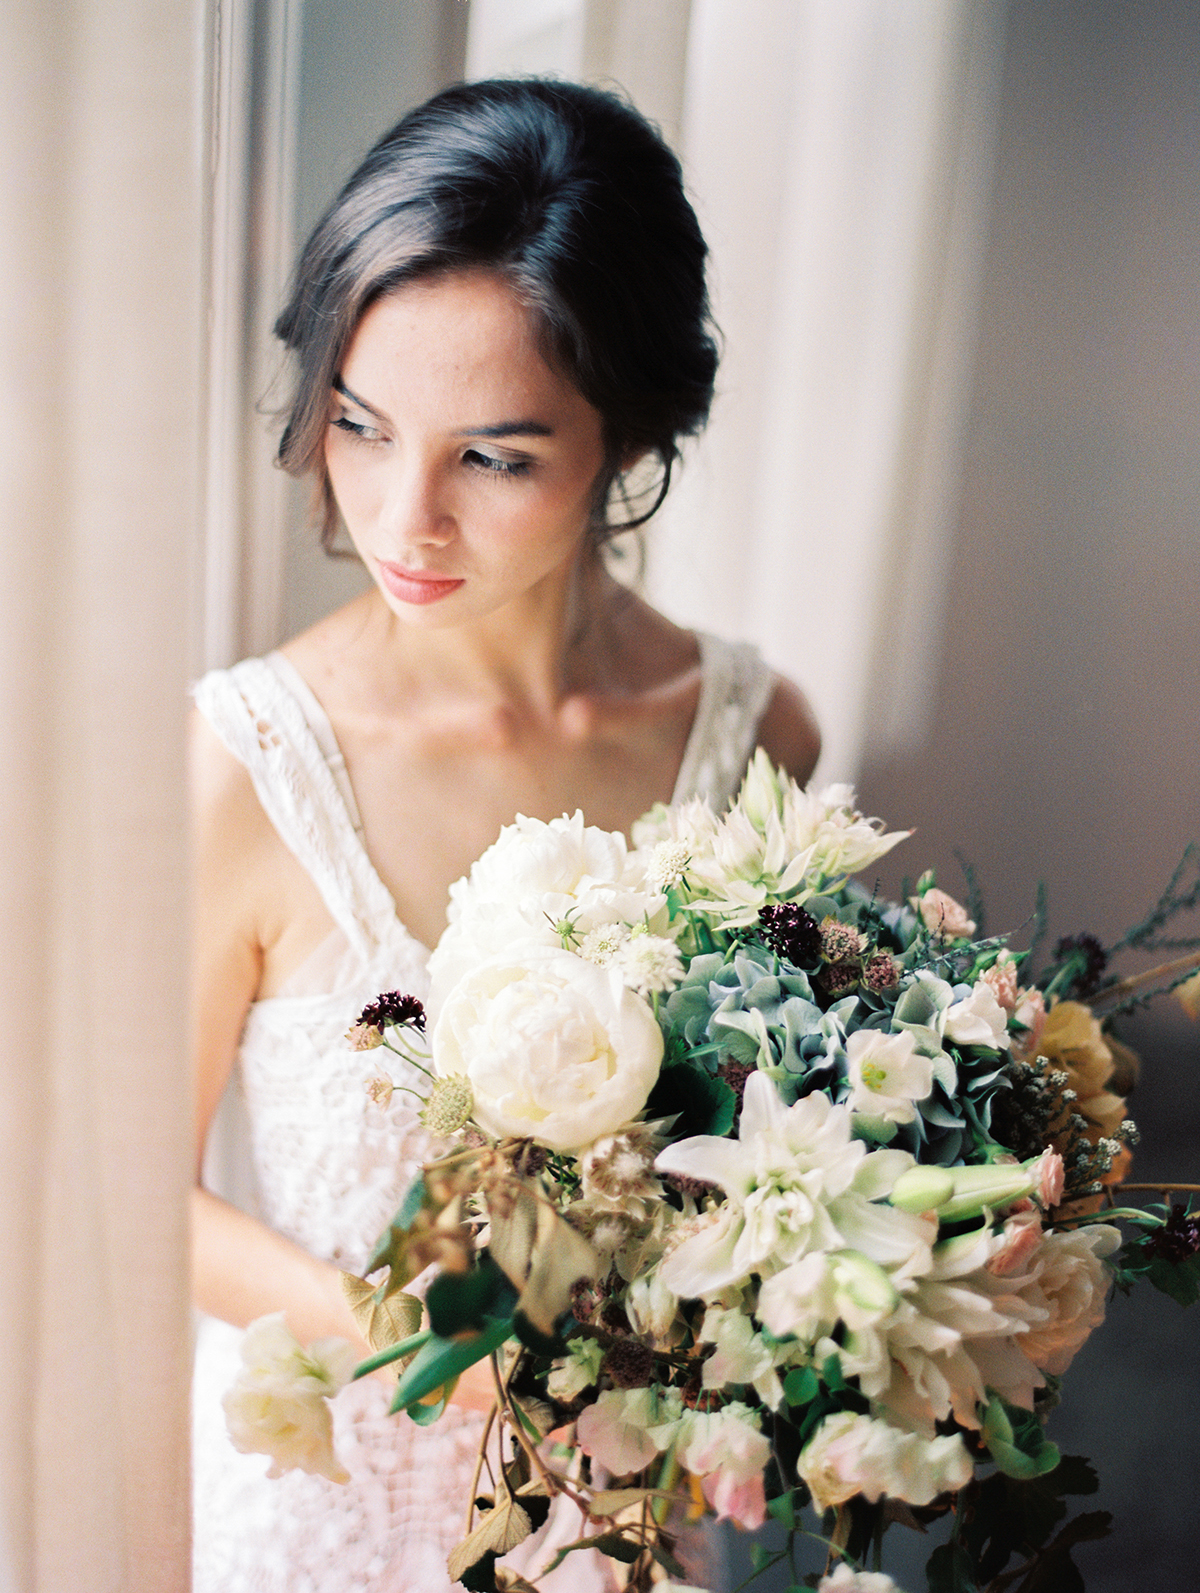 Bouquet with Soft Autumn Colors - Elizabeth Anne Designs: The Wedding Blog